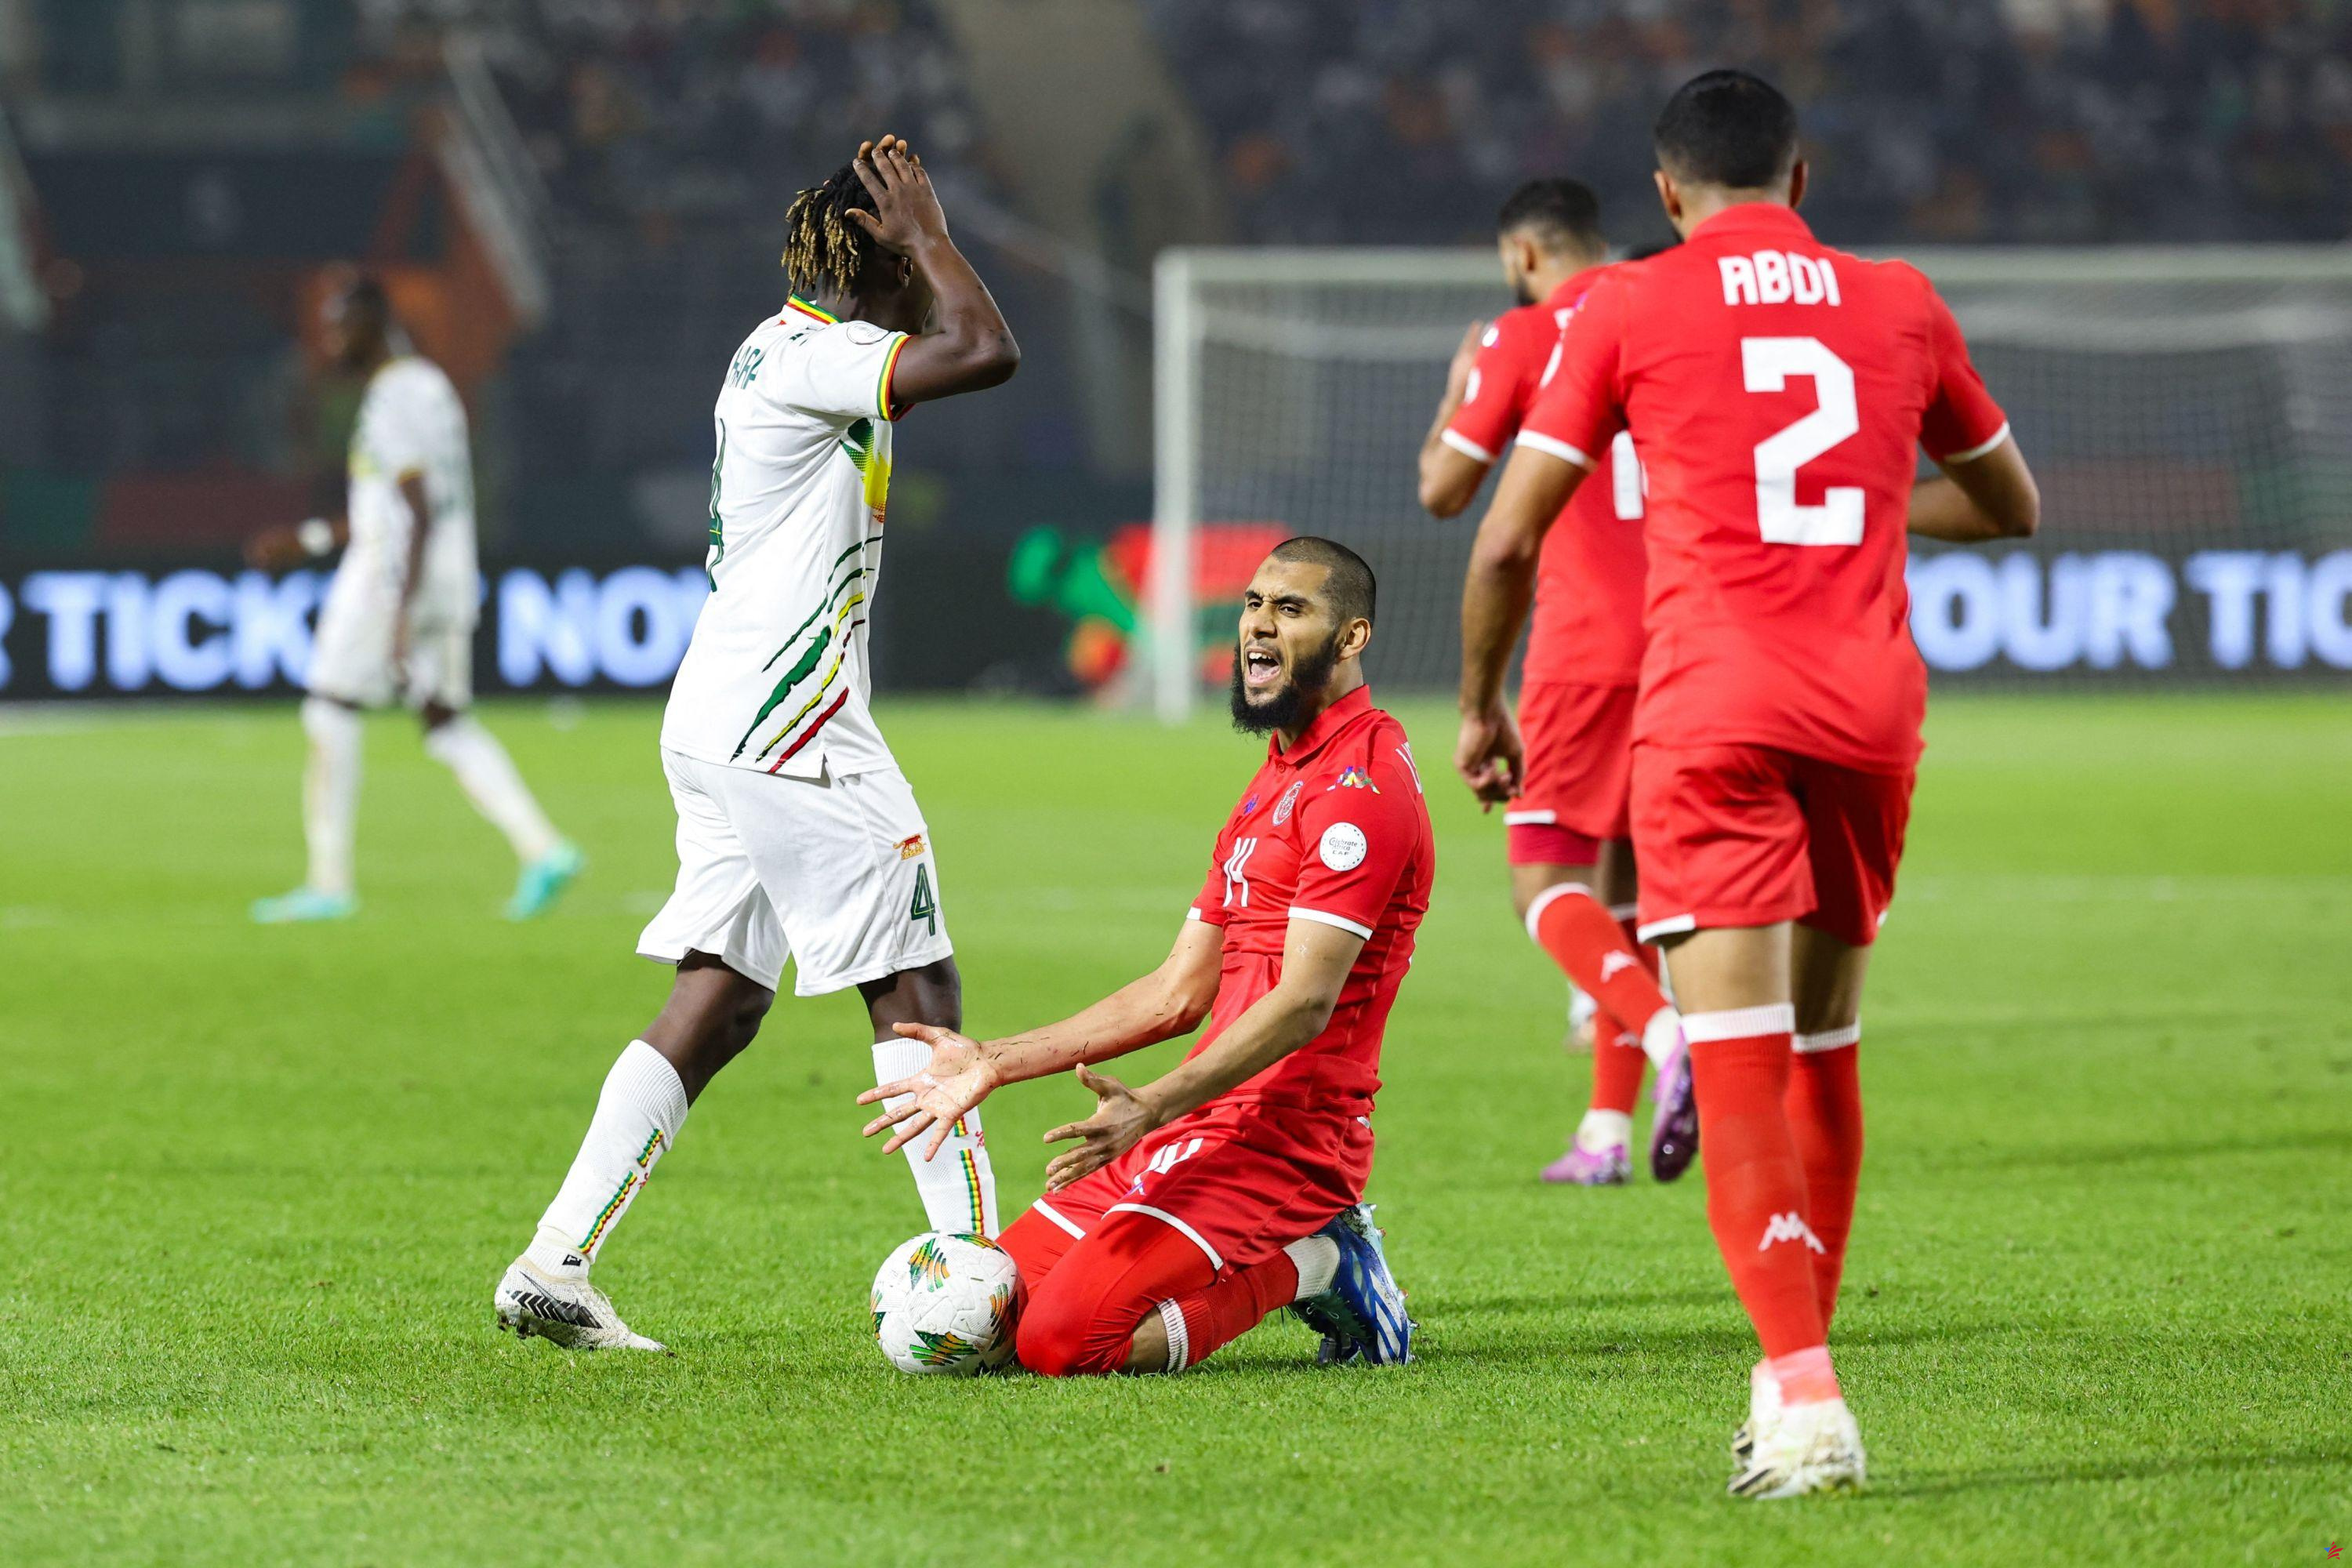 CAN: Mali concede un empate ante Túnez pero conserva temporalmente el primer puesto